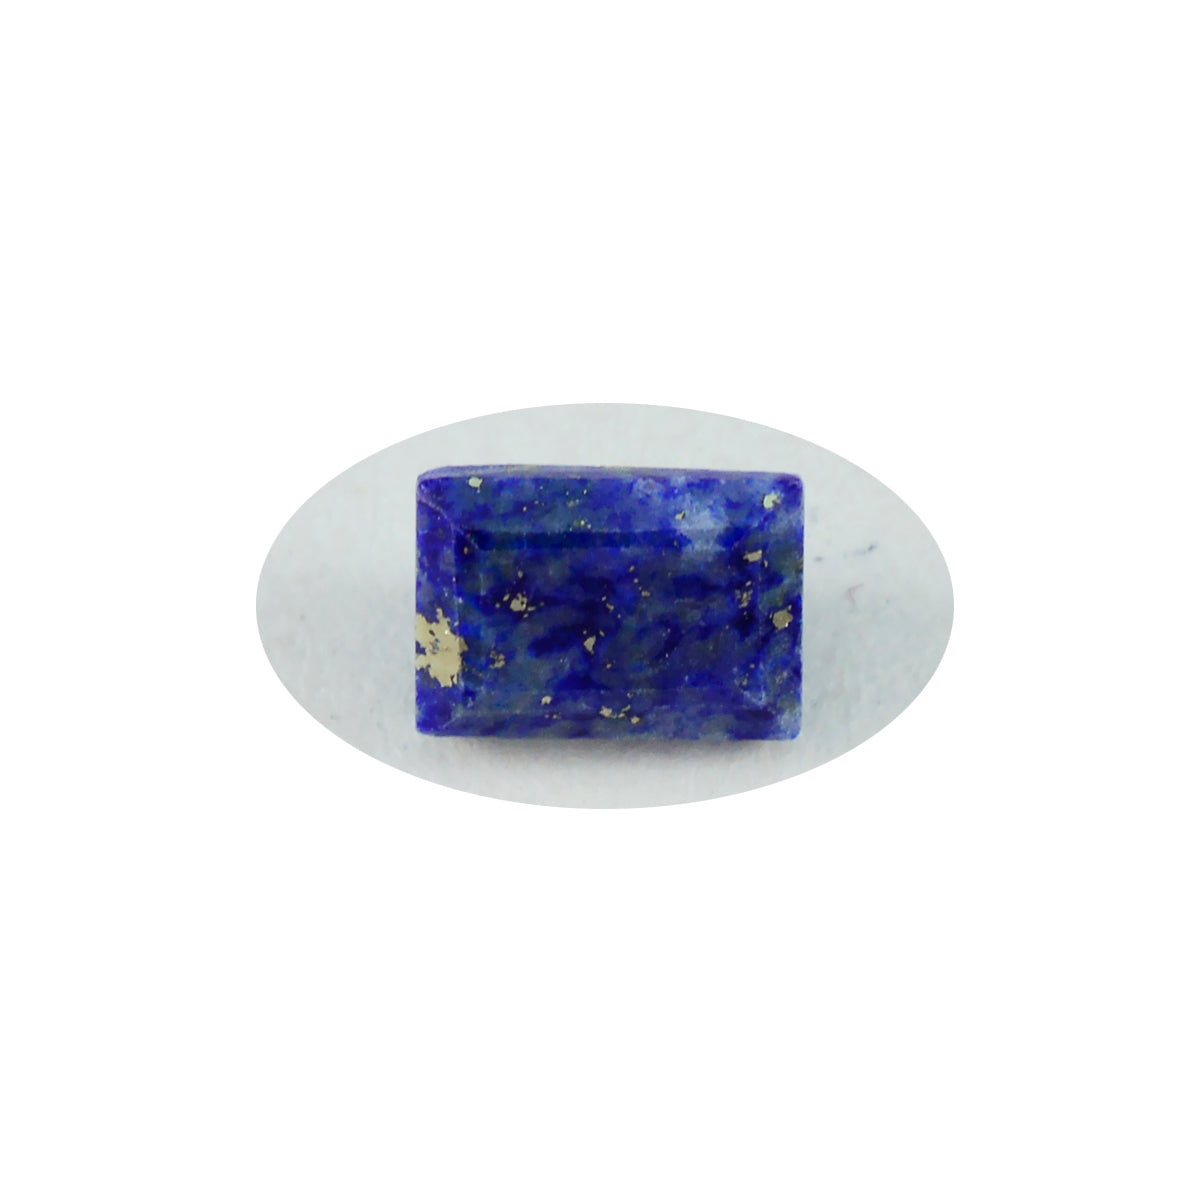 Riyogems 1 pièce de lapis lazuli bleu véritable à facettes 8x10mm forme octogonale pierres précieuses en vrac de belle qualité